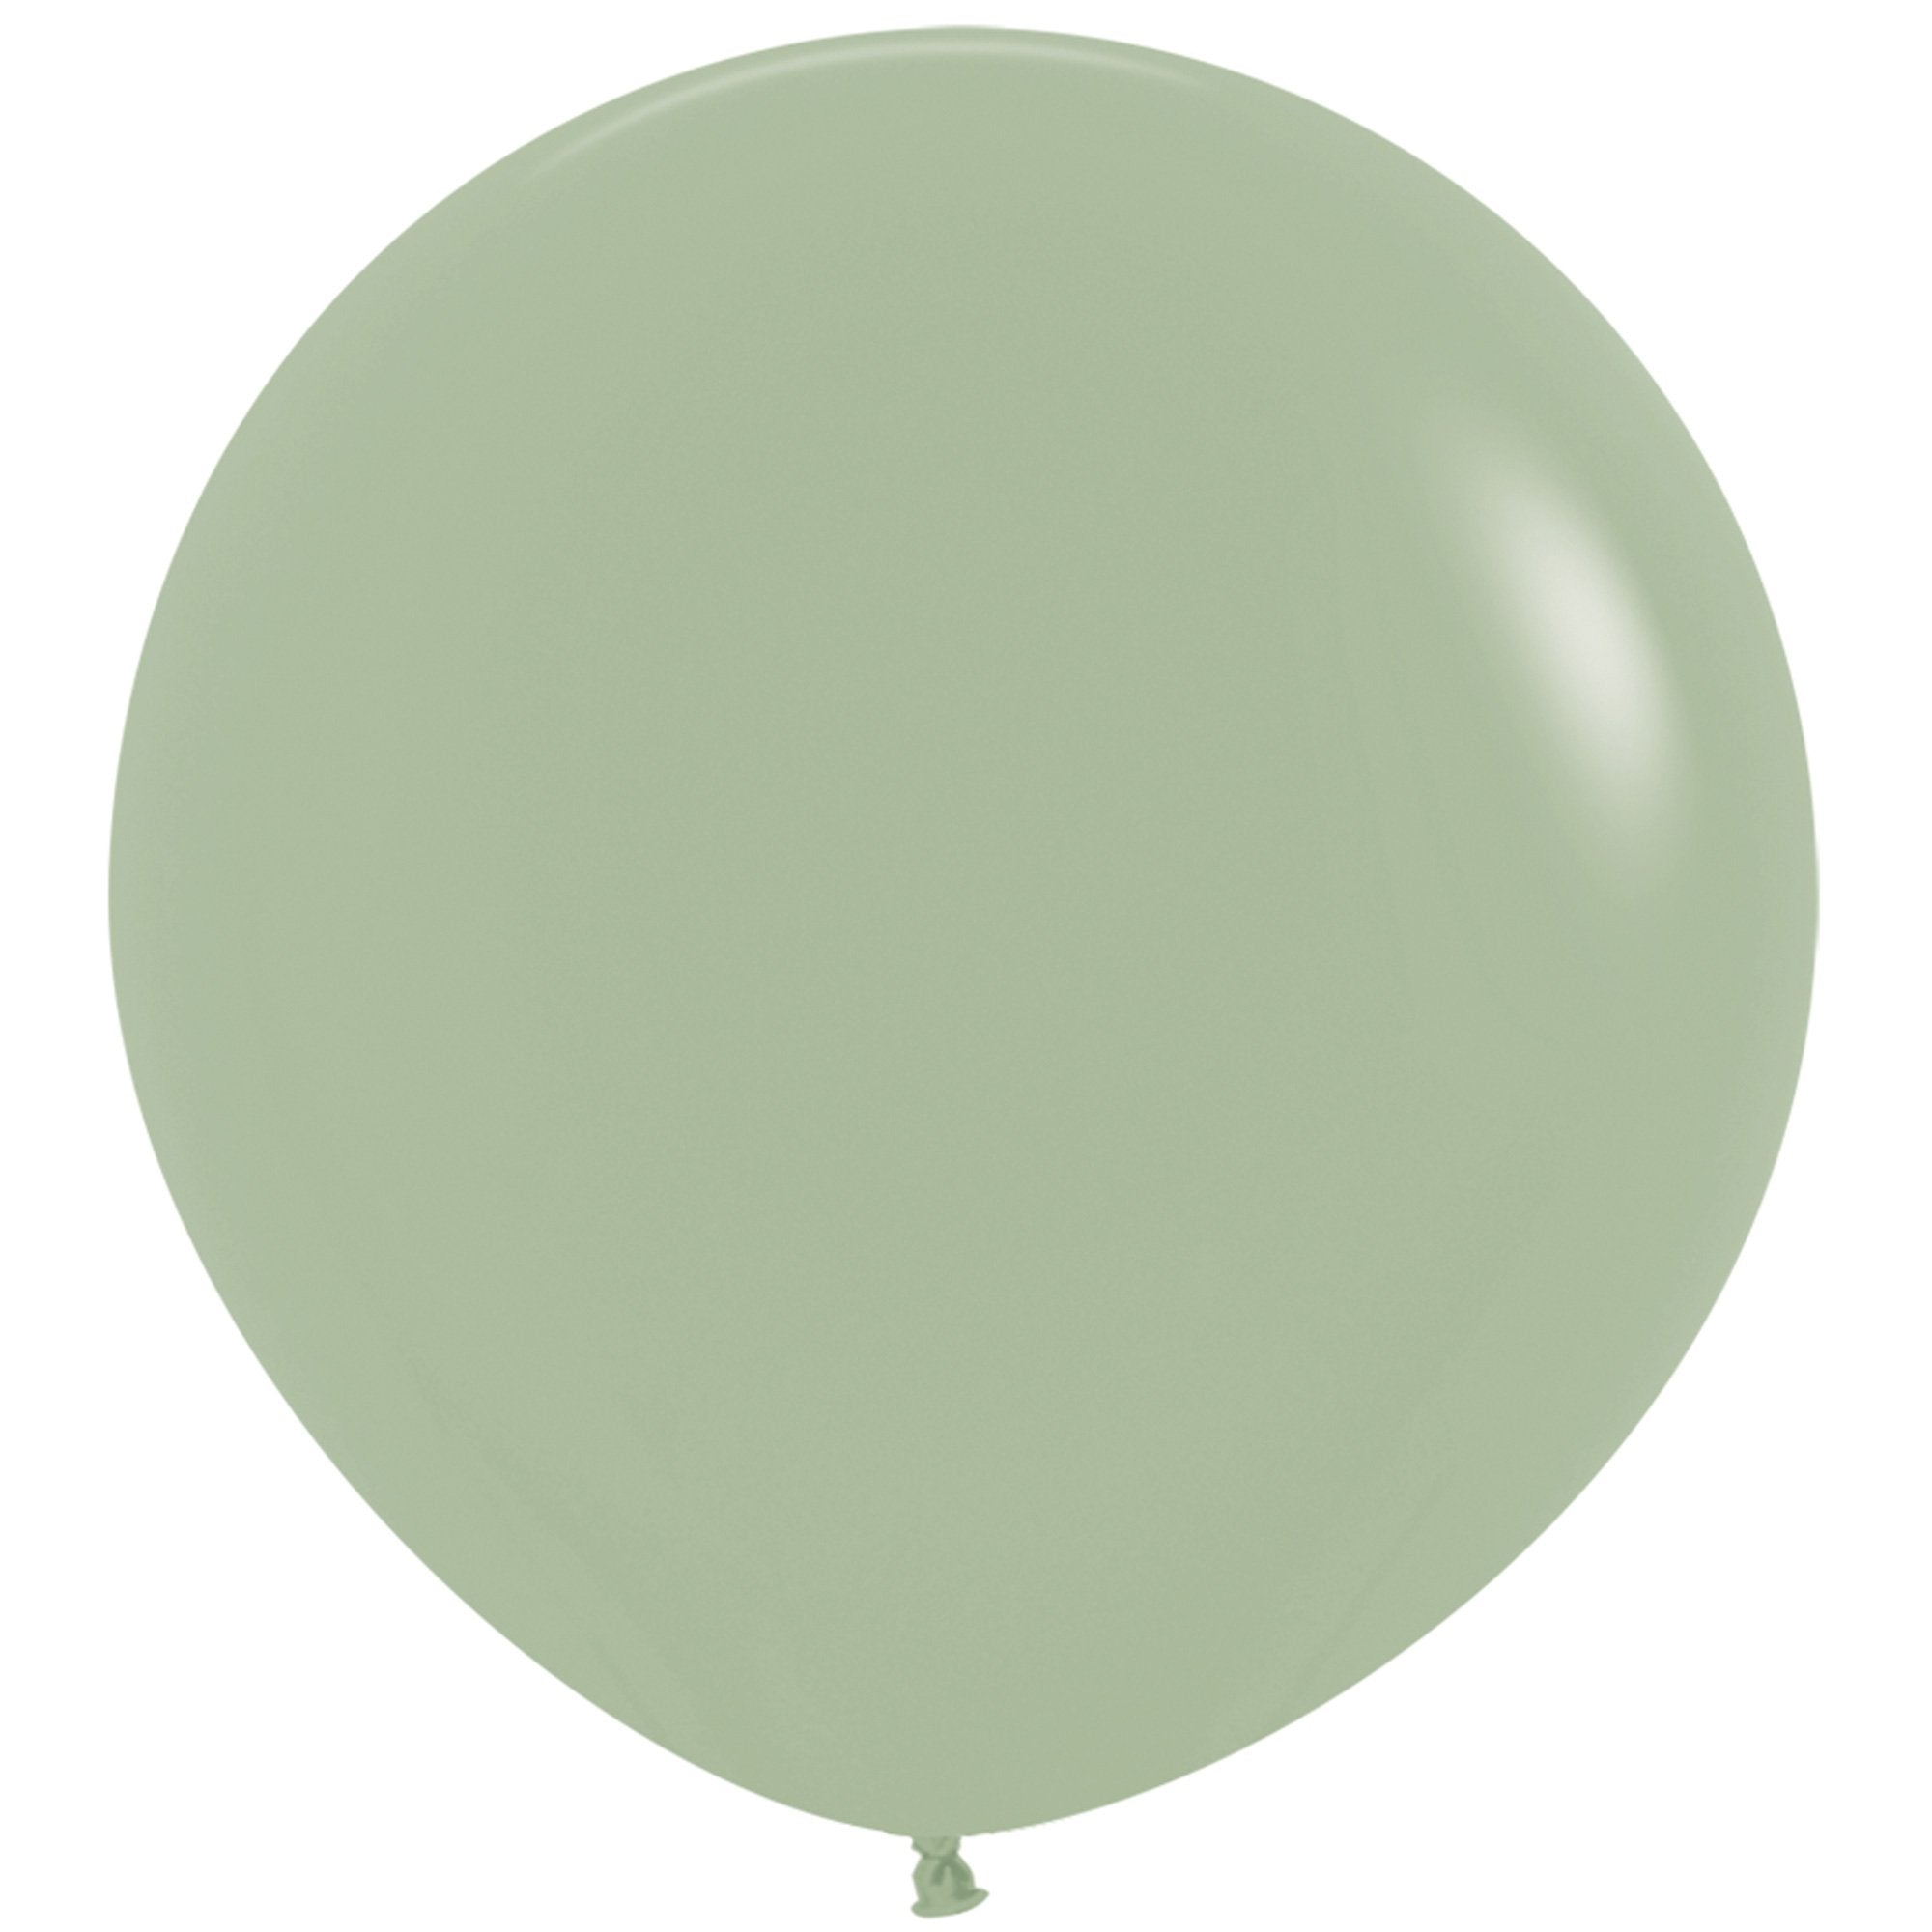 Eucalyptus Balloons